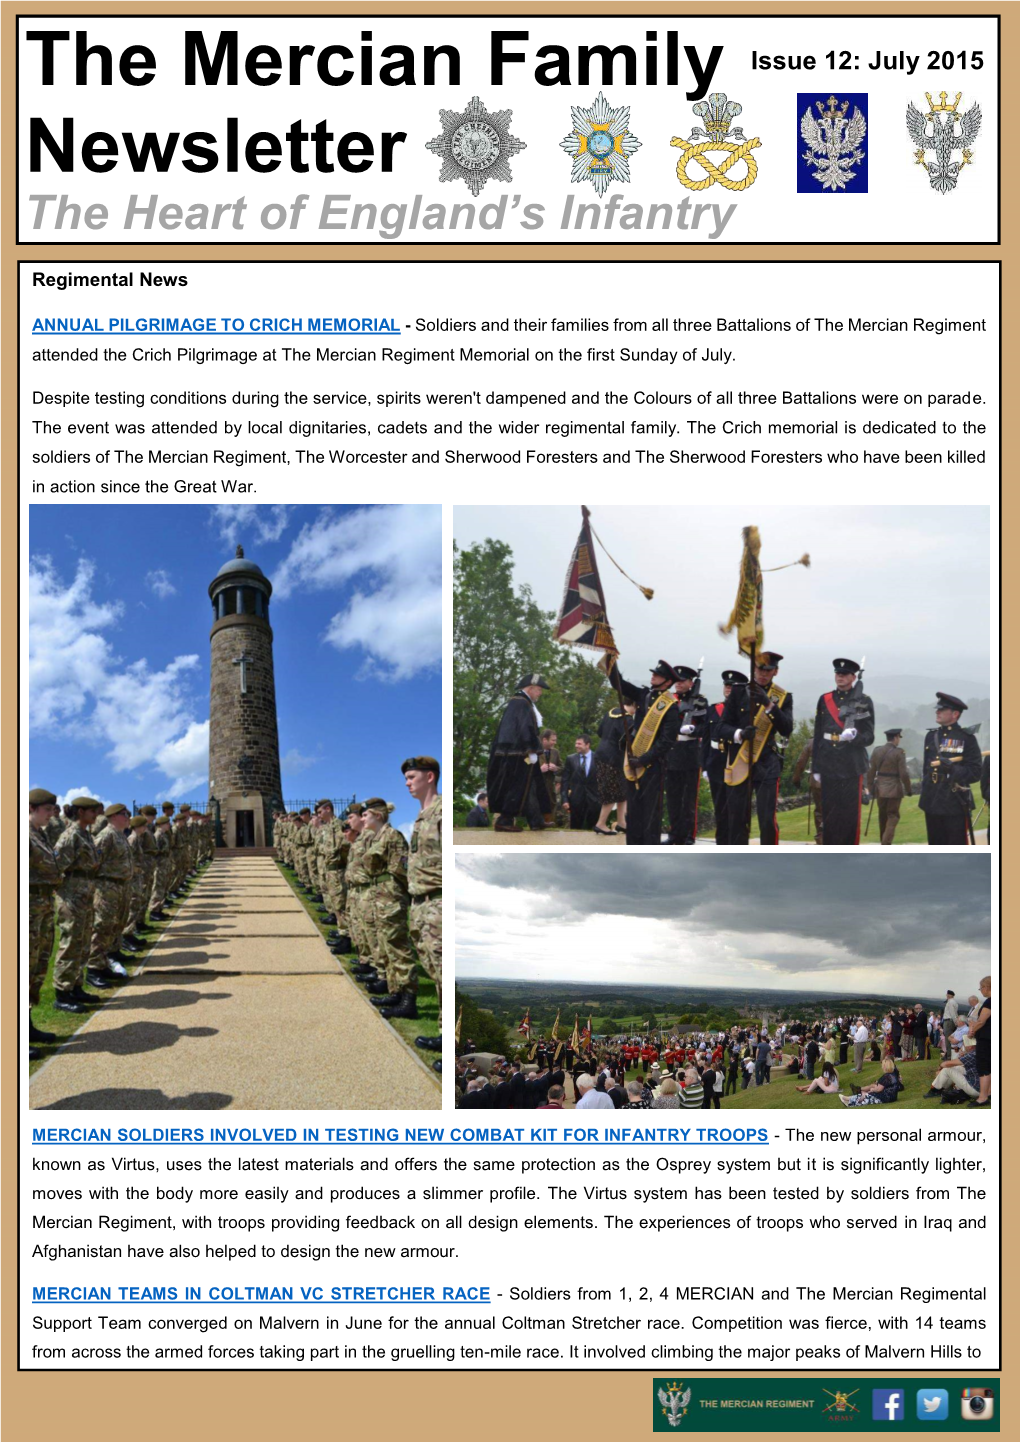 The Mercian Family Newsletter Issue 12